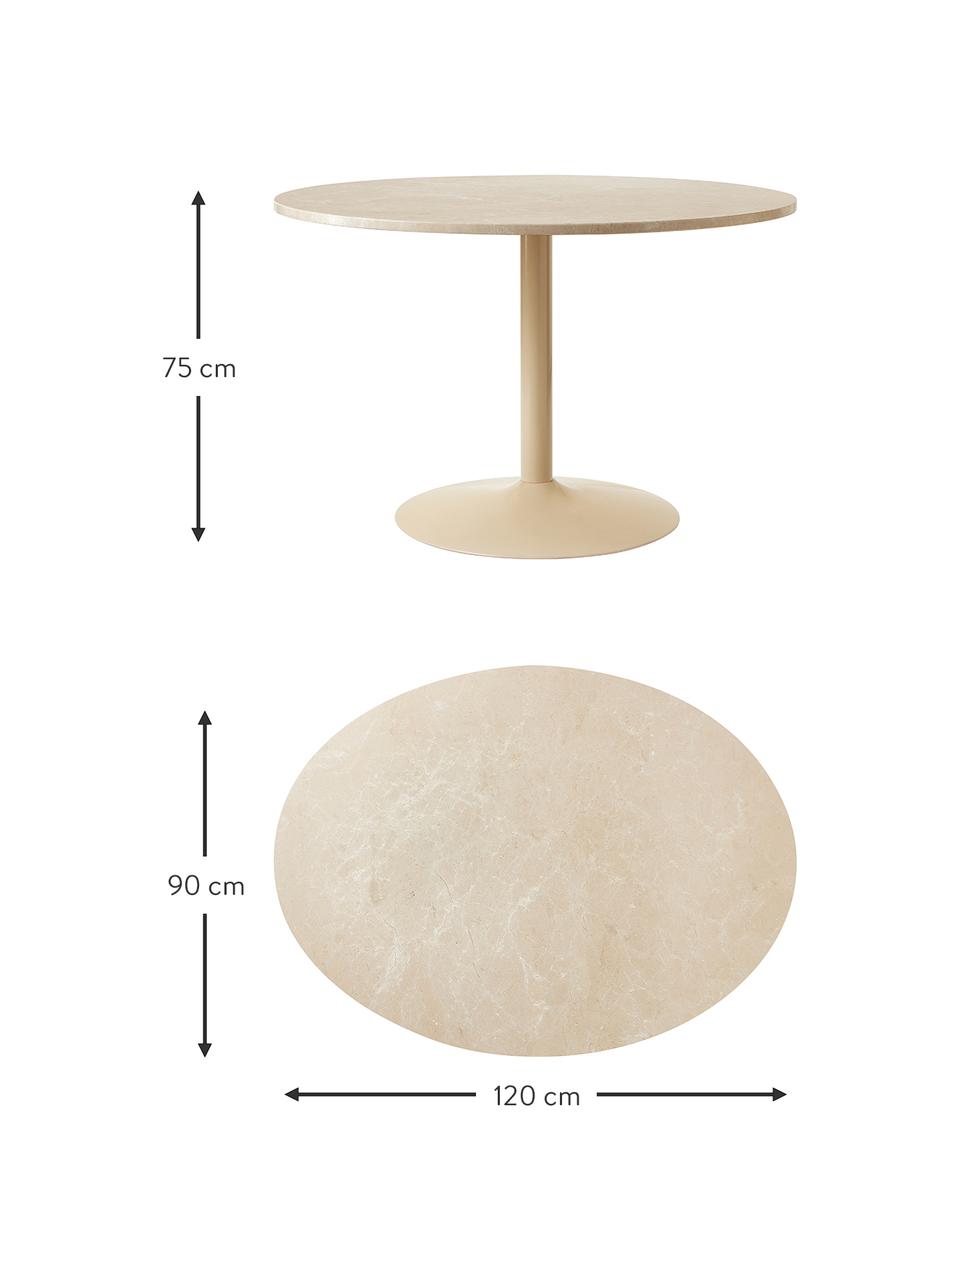 Ovaler Marmor-Esstisch Miley, 120 x 90 cm, Tischplatte: Marmor, Gestell: Metall, pulverbeschichtet, Beige, B 120 x T 90 cm